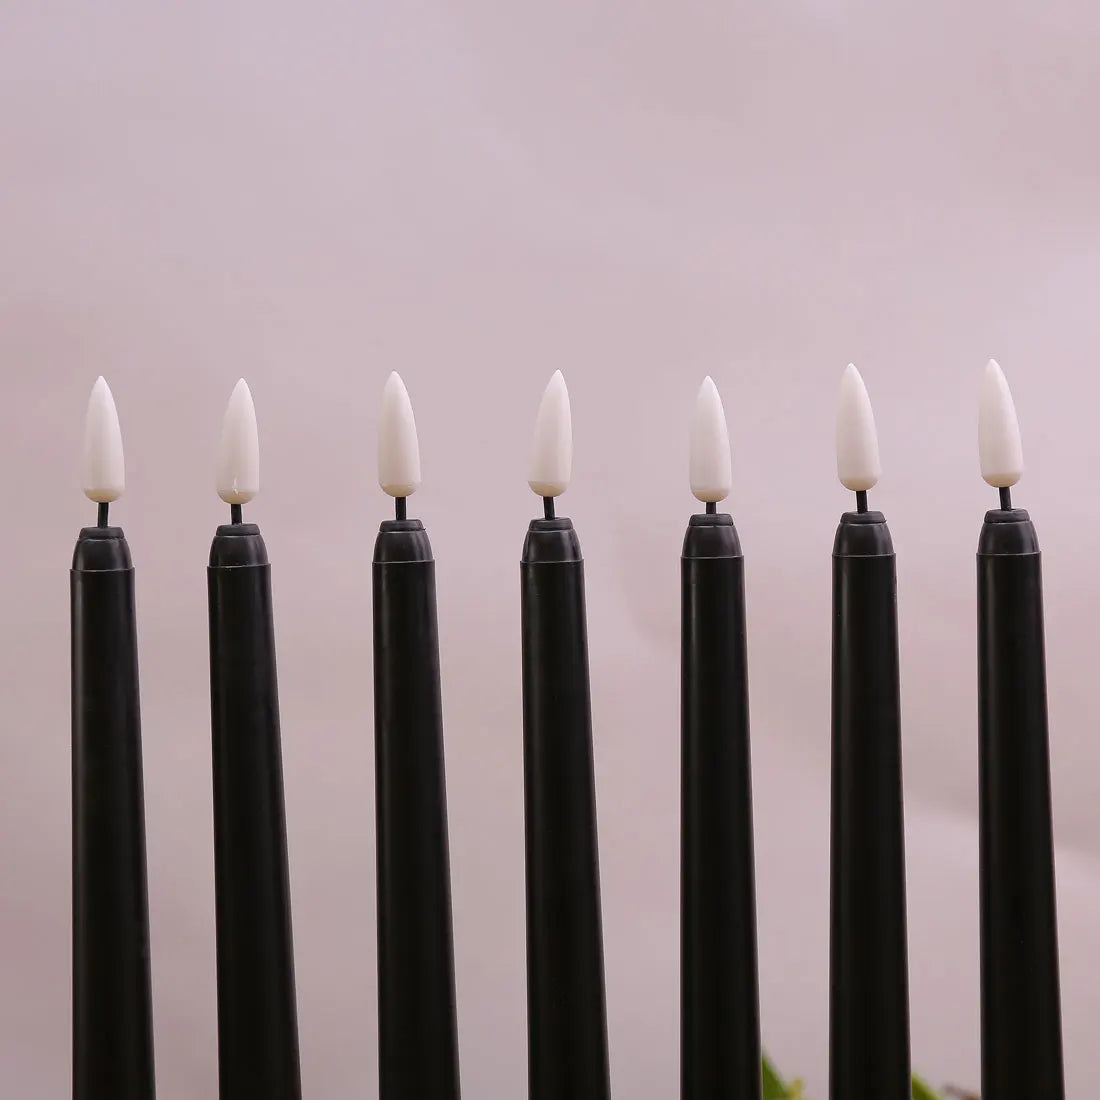 3 ose 4 copë 11 inç Halloween të zeza të zeza LED me flakë të zeza me dritë me dritë të verdhë/të bardhë të bardhë, qirinj LED të rremë plastikë të baterisë